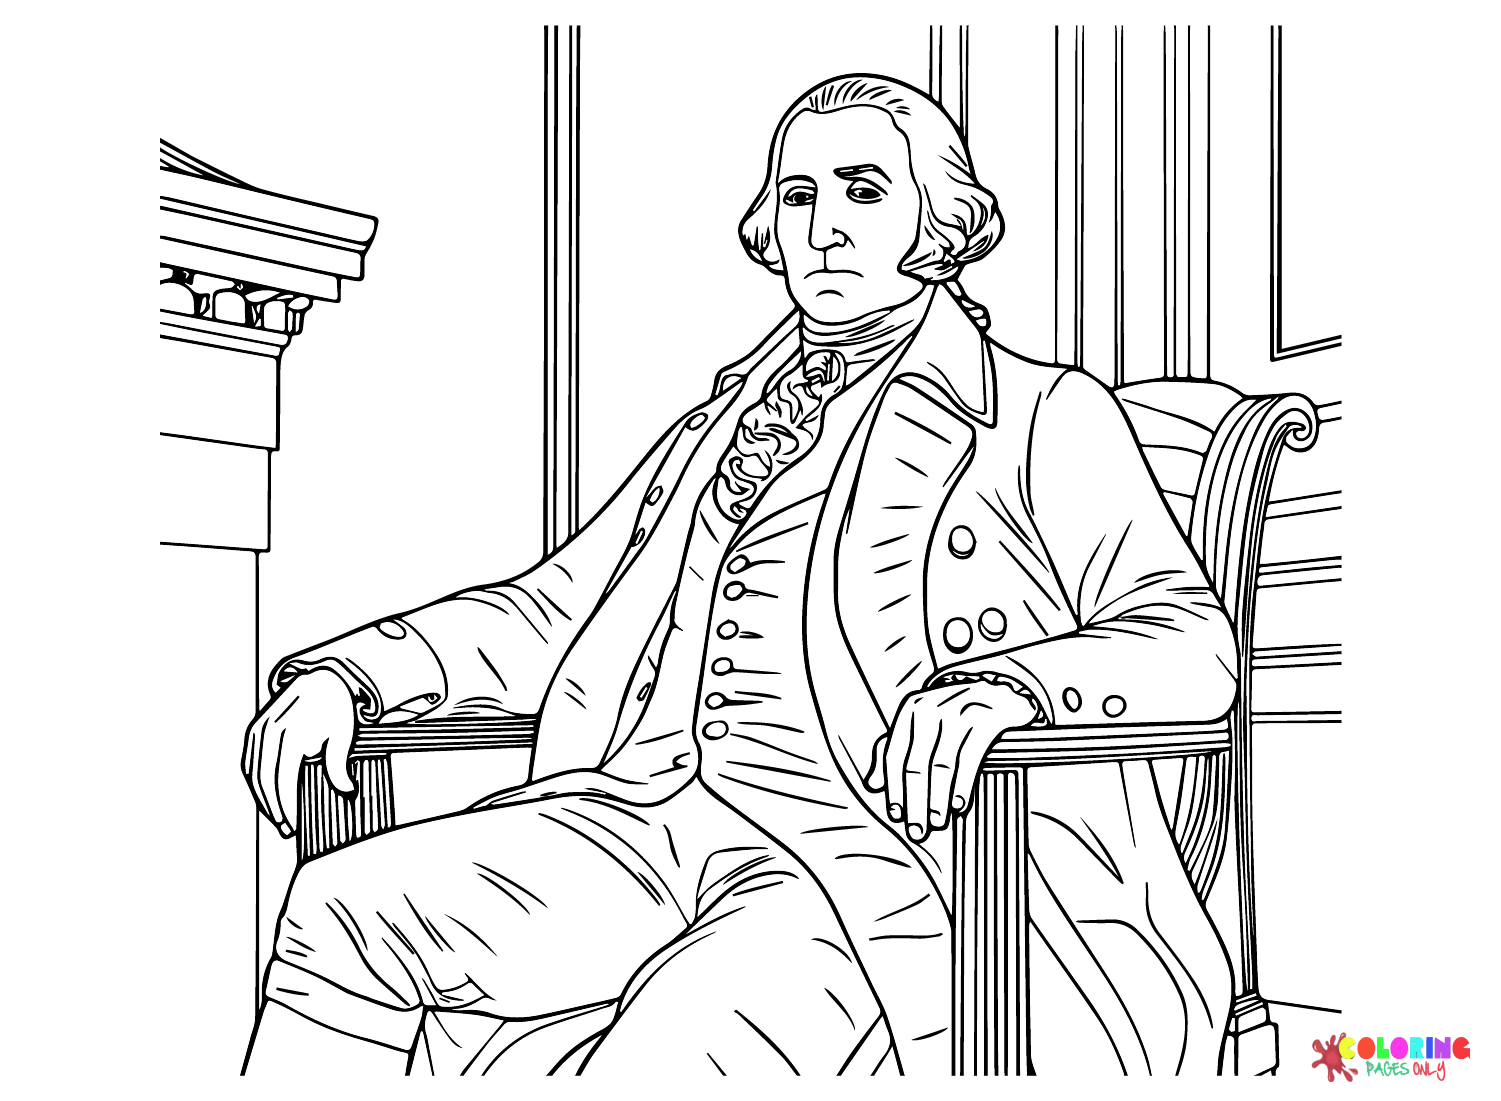 George Washington-Zeichnung von George Washington